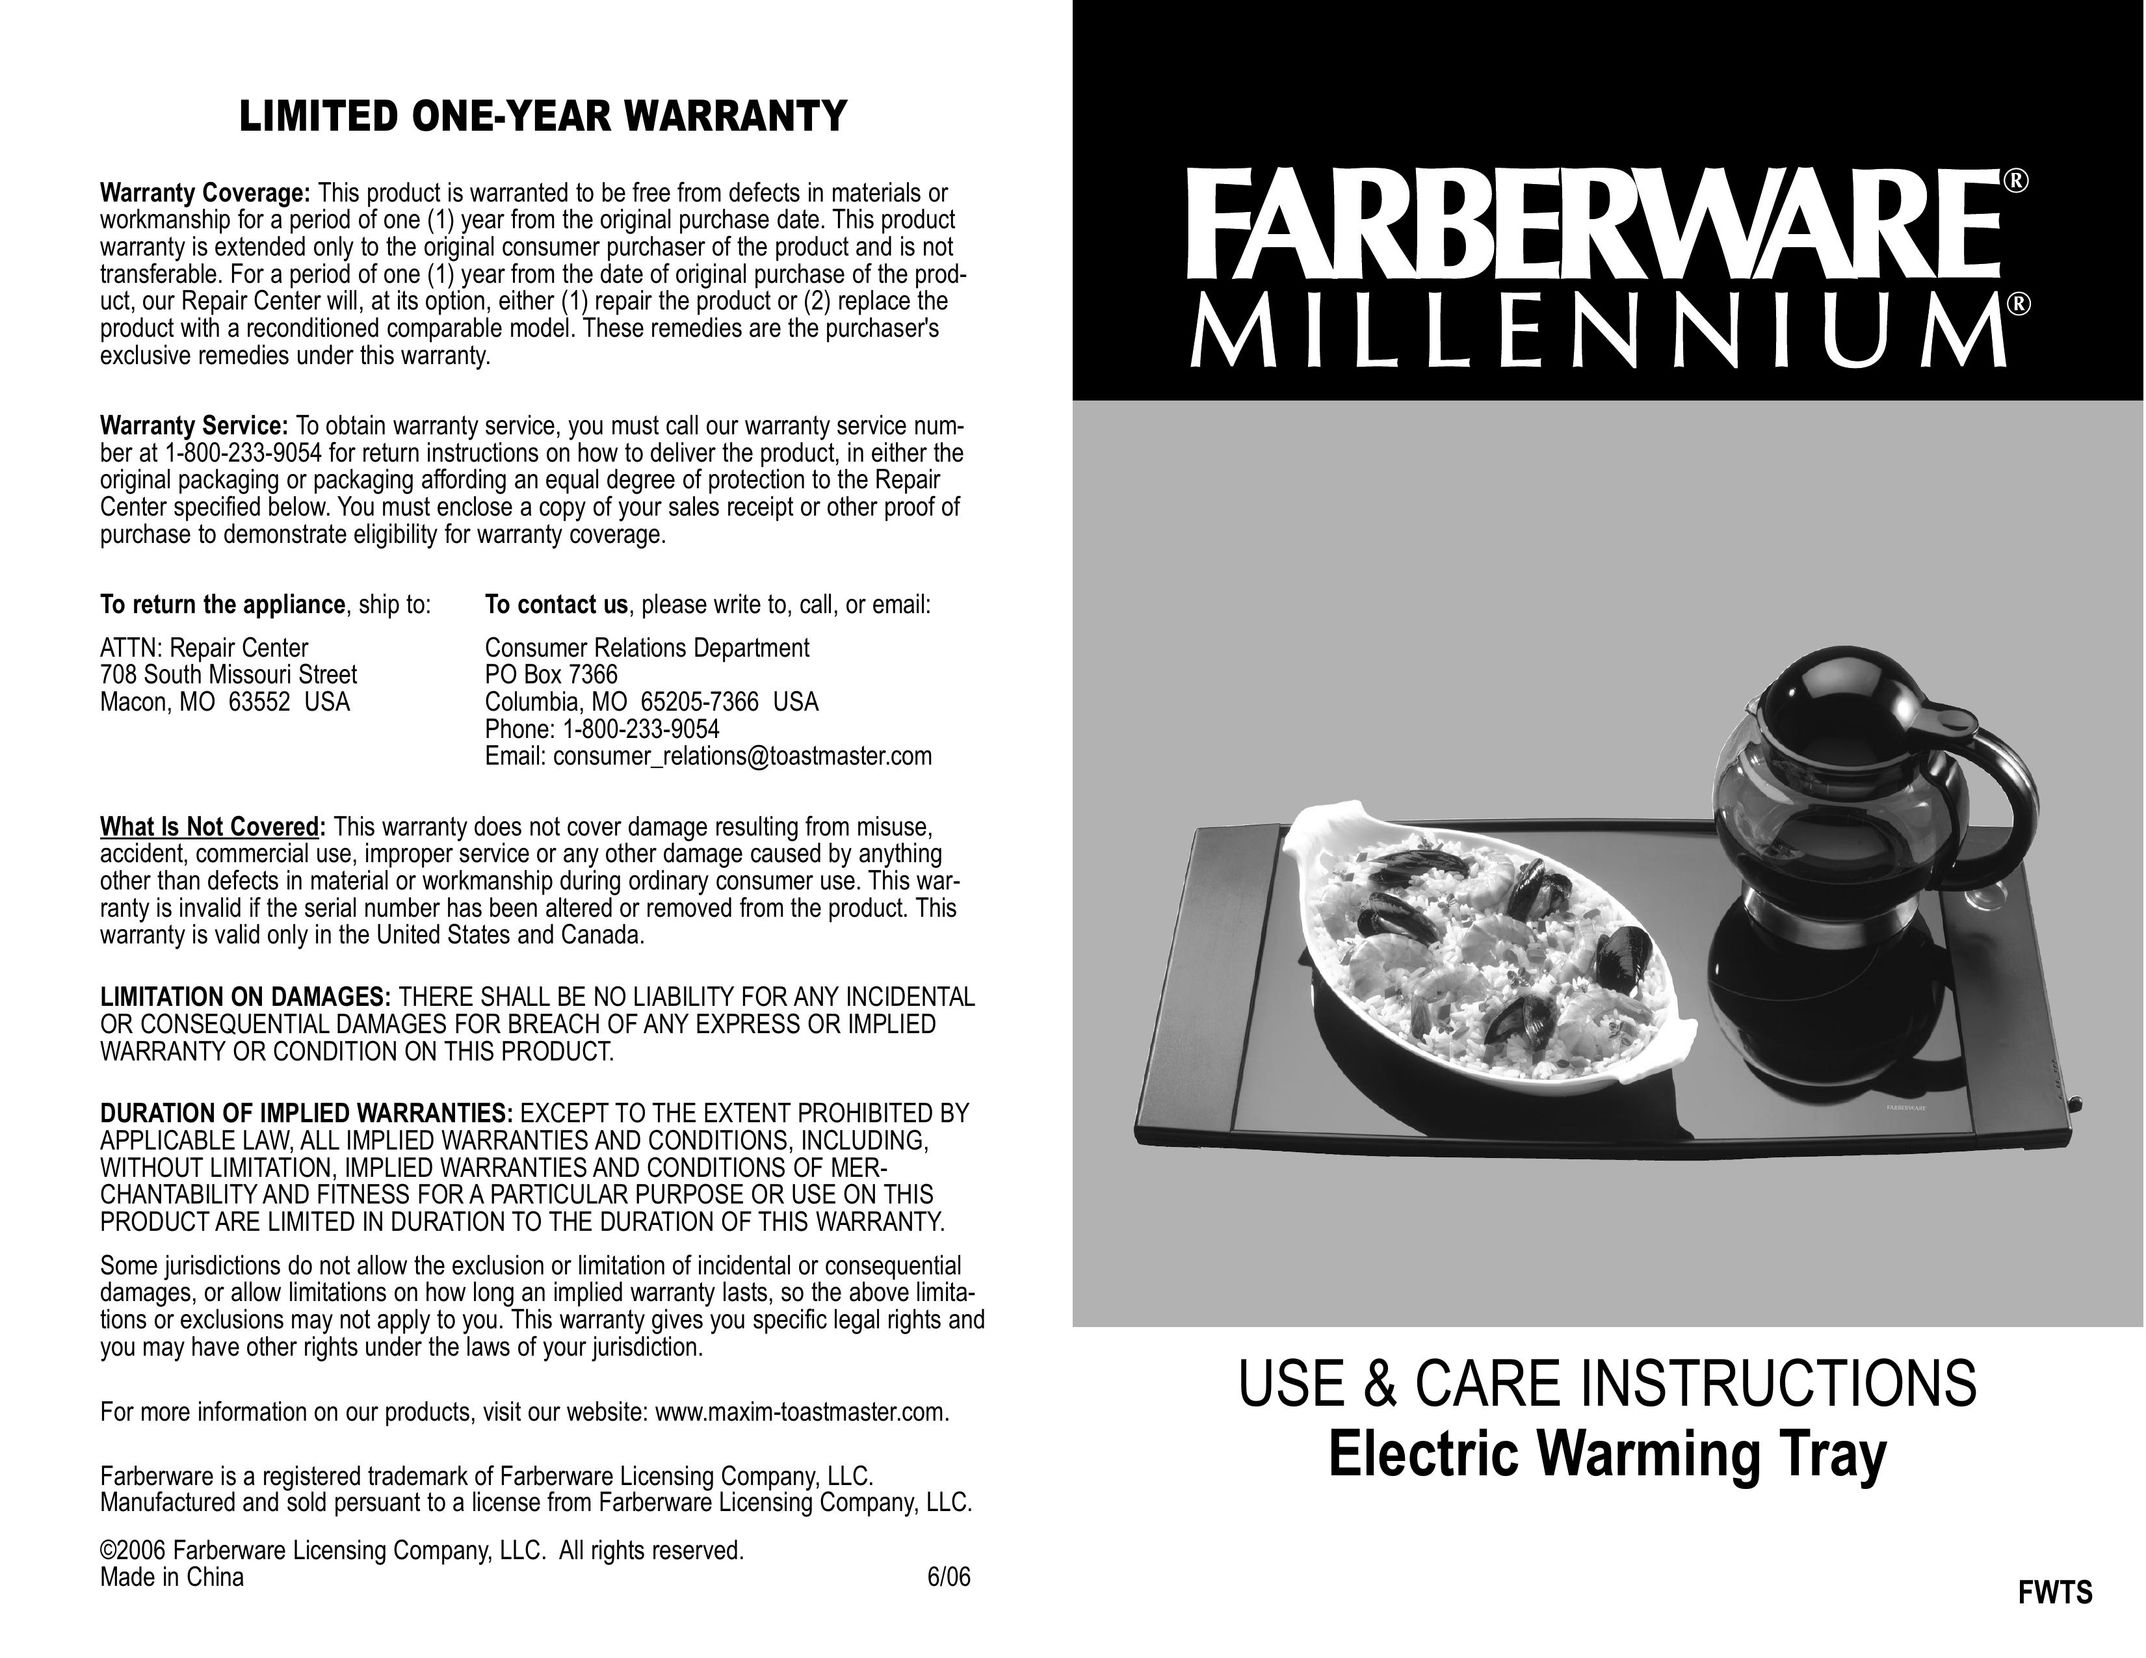 Toastmaster FWTS Food Warmer User Manual